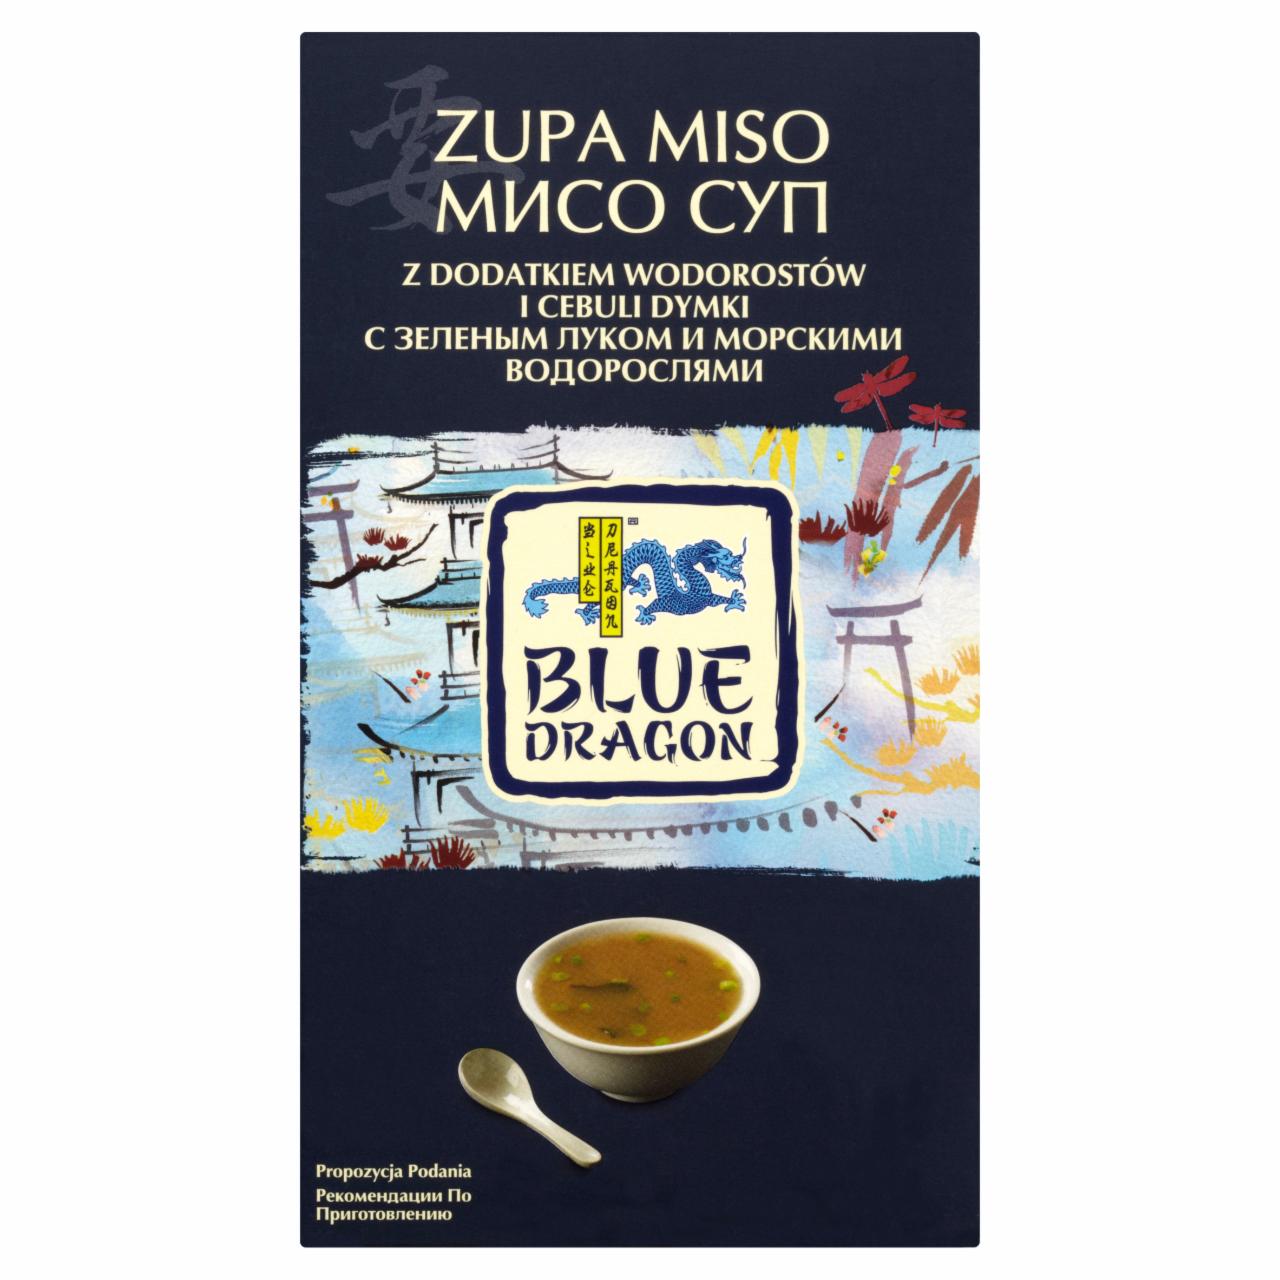 Zdjęcia - Blue Dragon Zupa miso 92,5 g